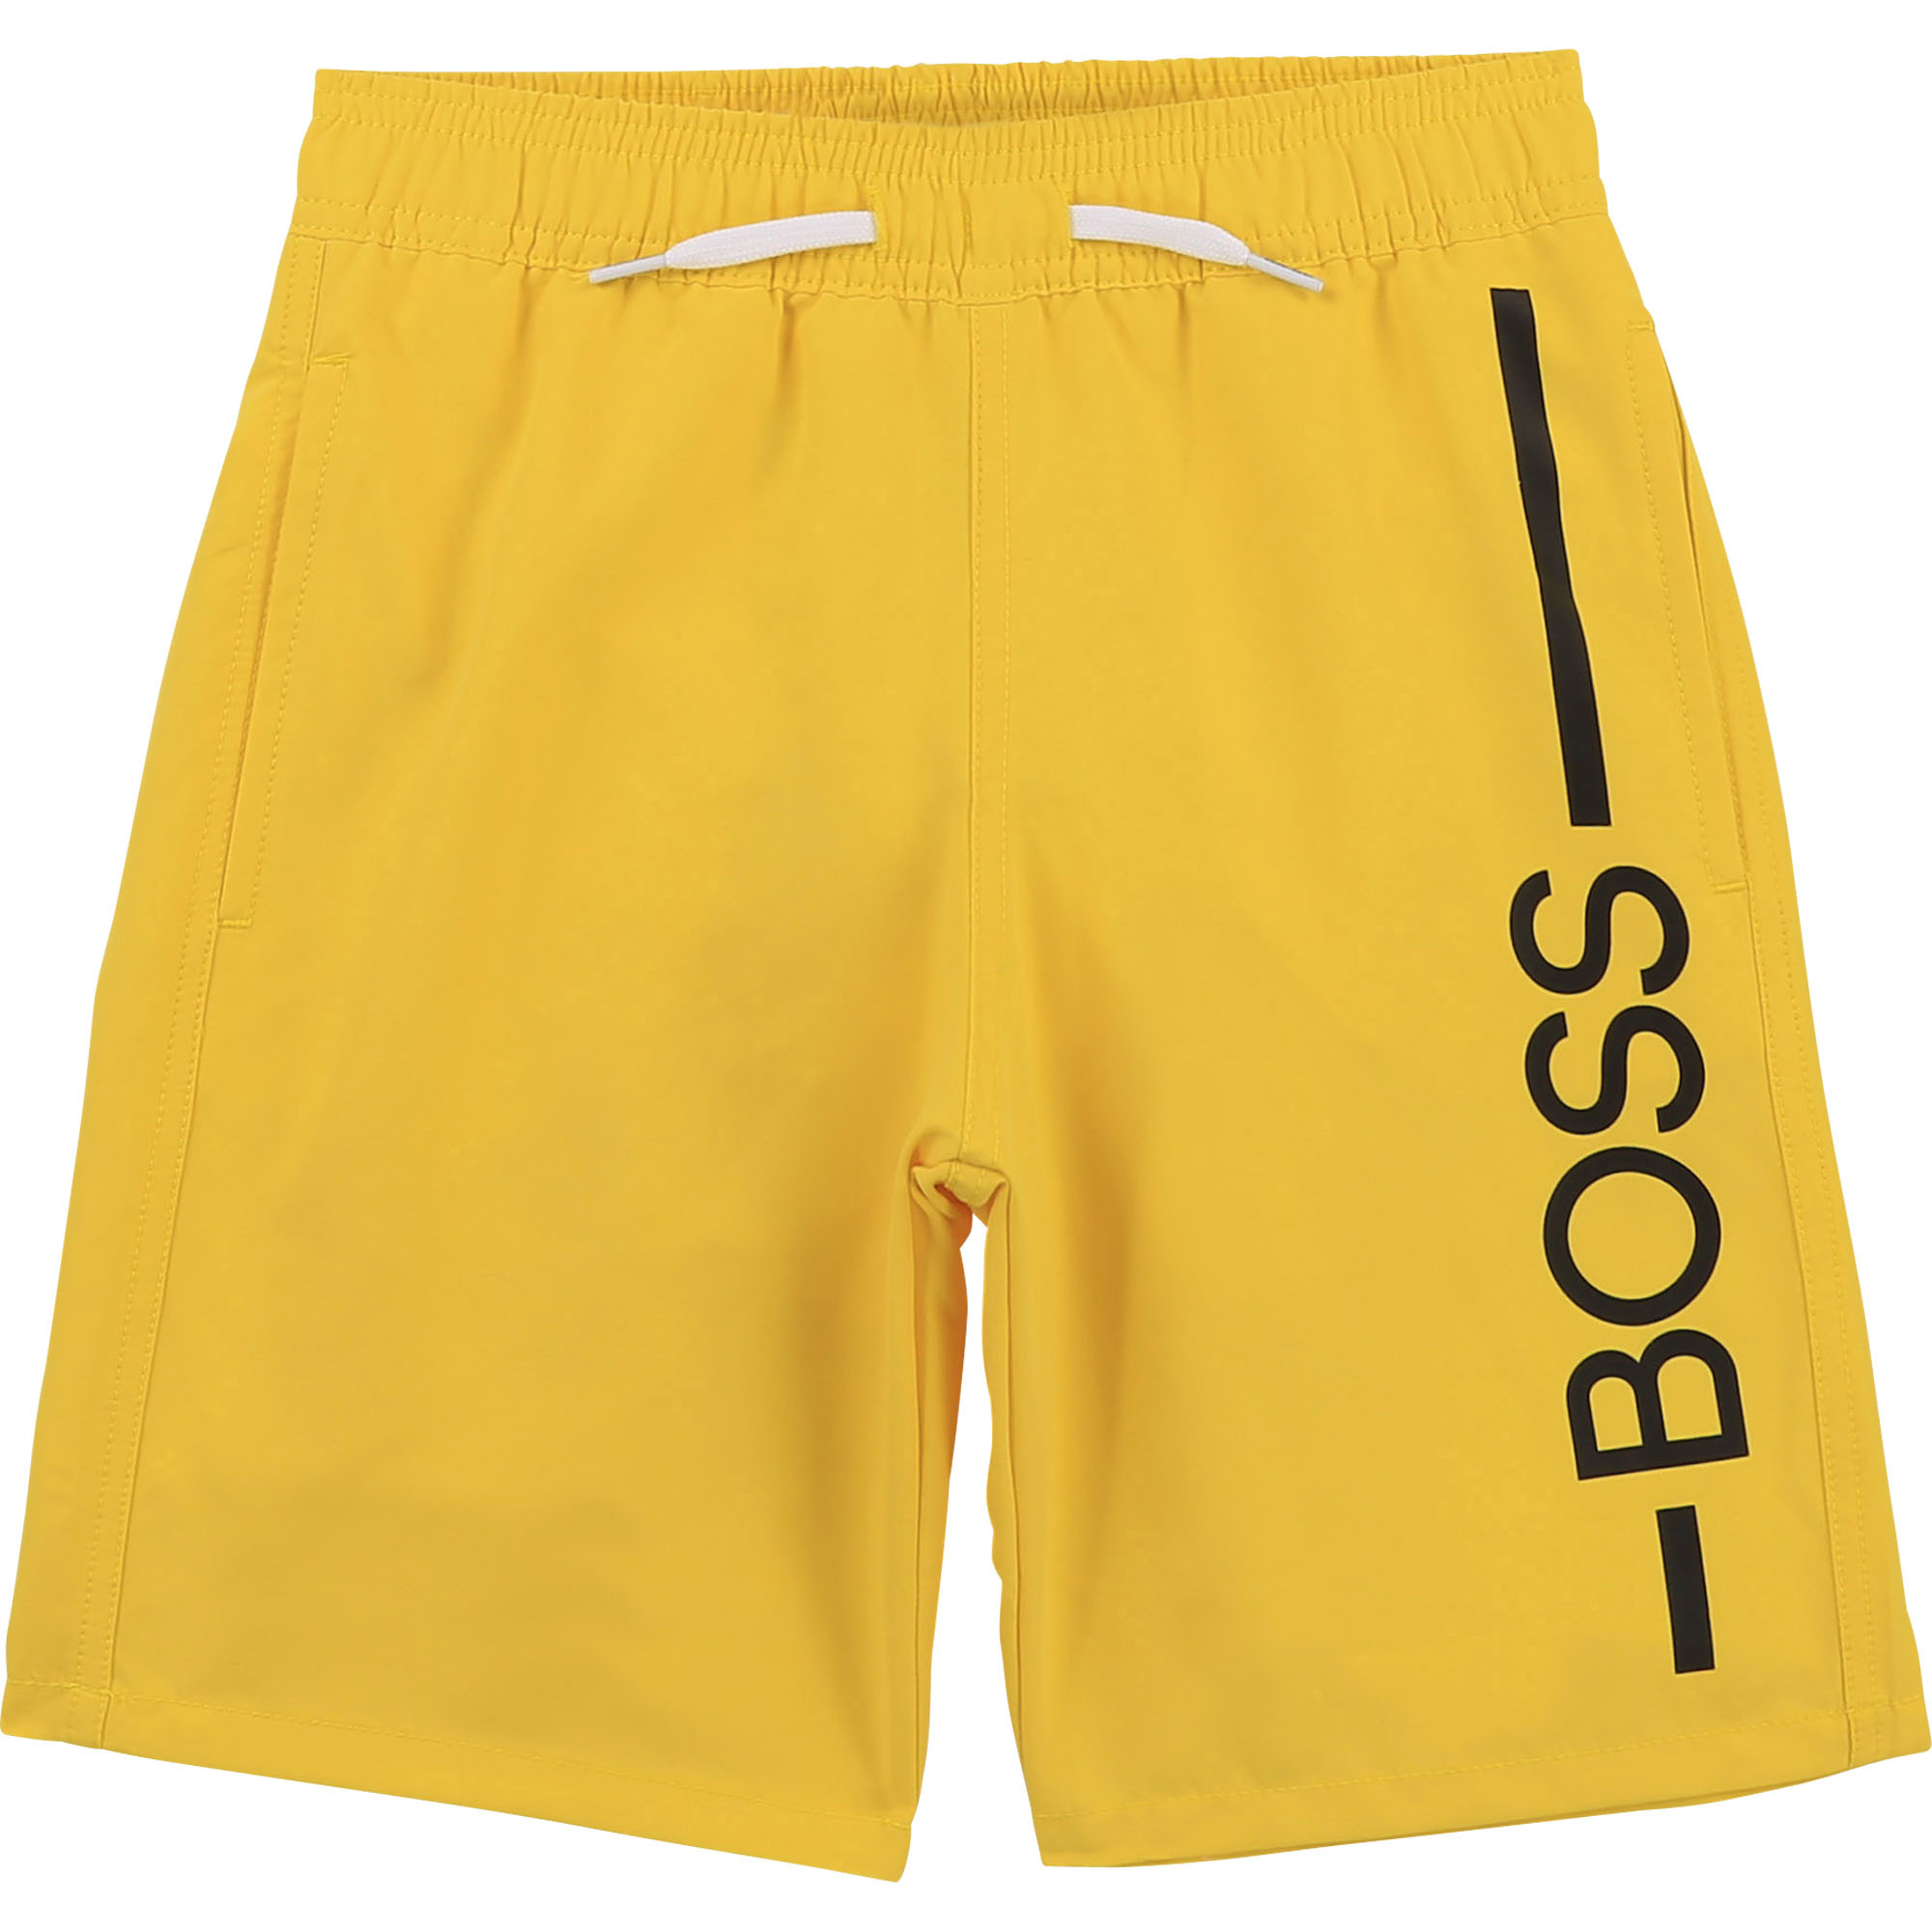 hugo boss yellow swim shorts